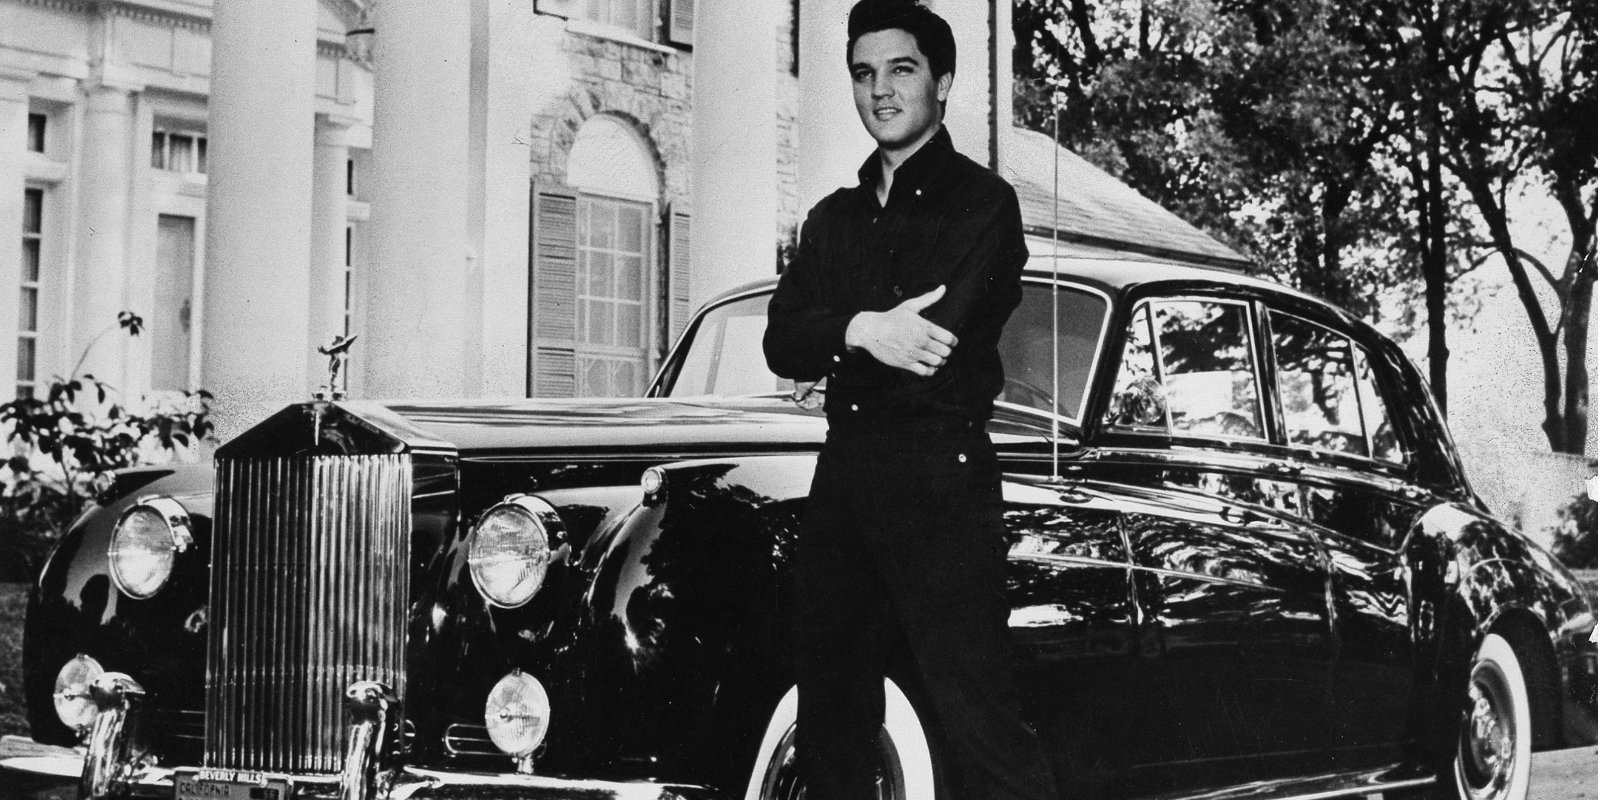 Elvis Presley: Graceland’s Foyer Holds a Secret Behind Its Wallpaper